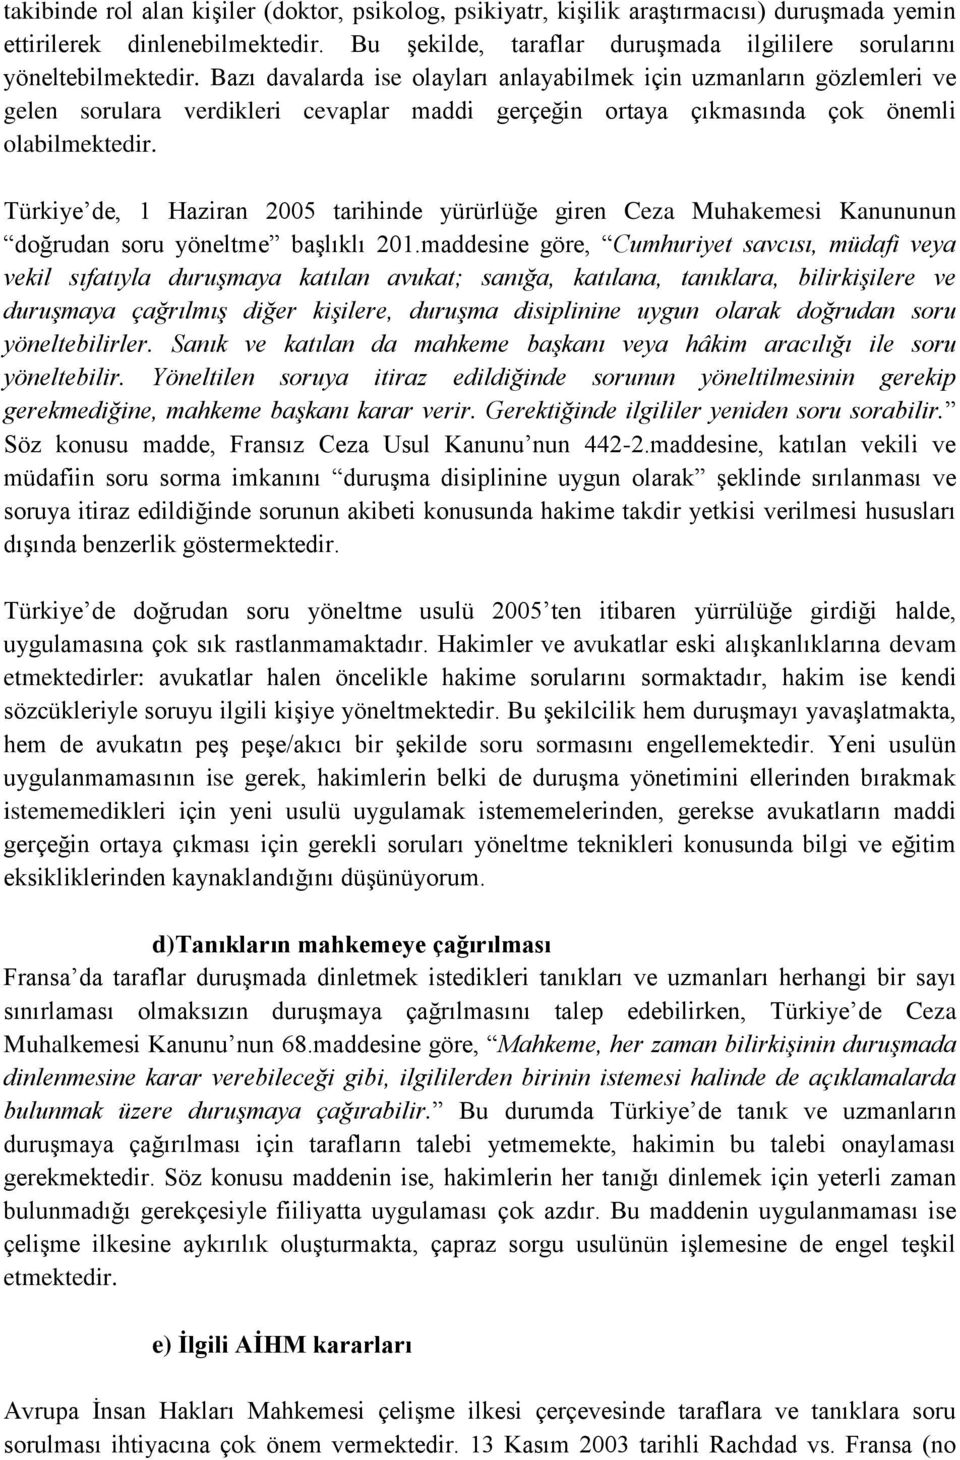 Türkiye de, 1 Haziran 2005 tarihinde yürürlüğe giren Ceza Muhakemesi Kanununun doğrudan soru yöneltme başlıklı 201.